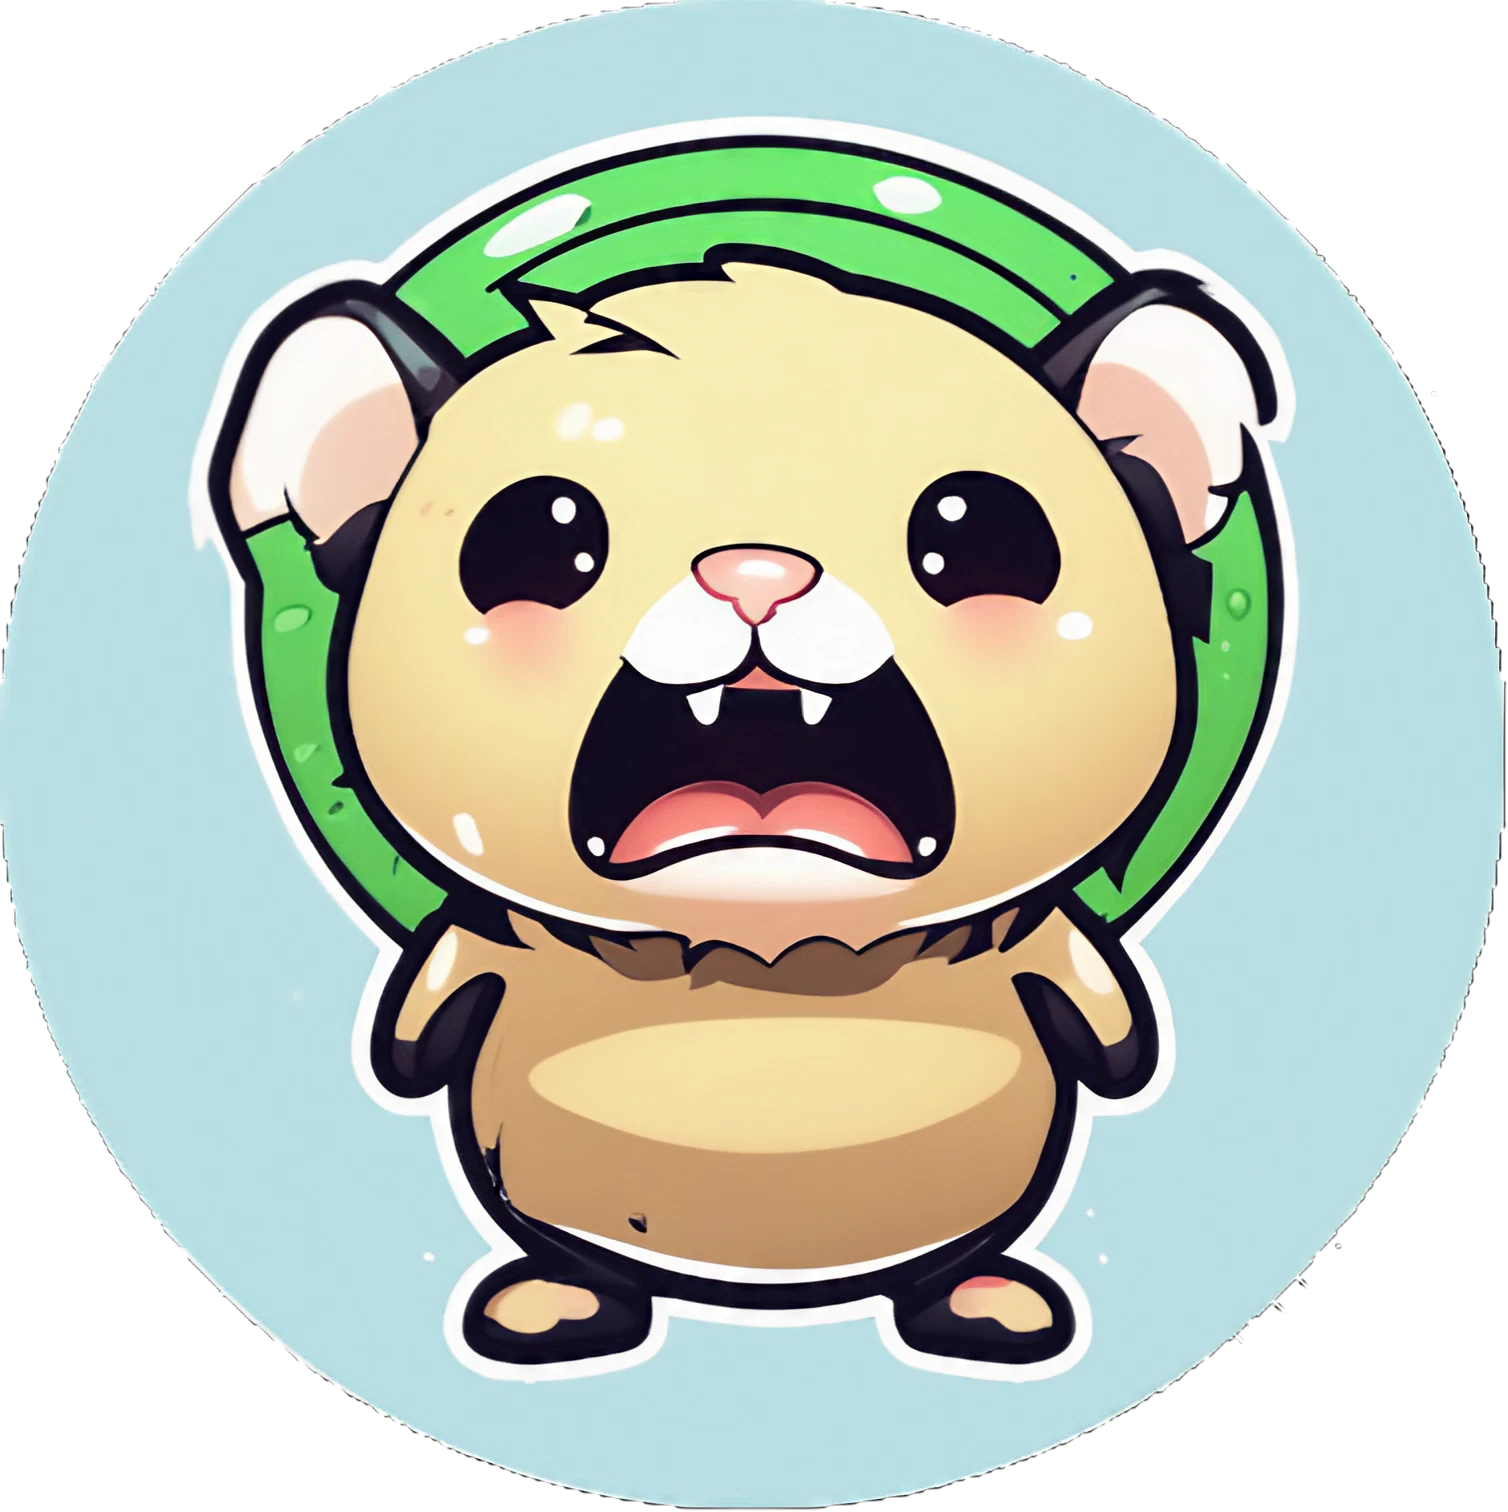 Chibi Cute Monster Hamster - Sticker - 3x3cm